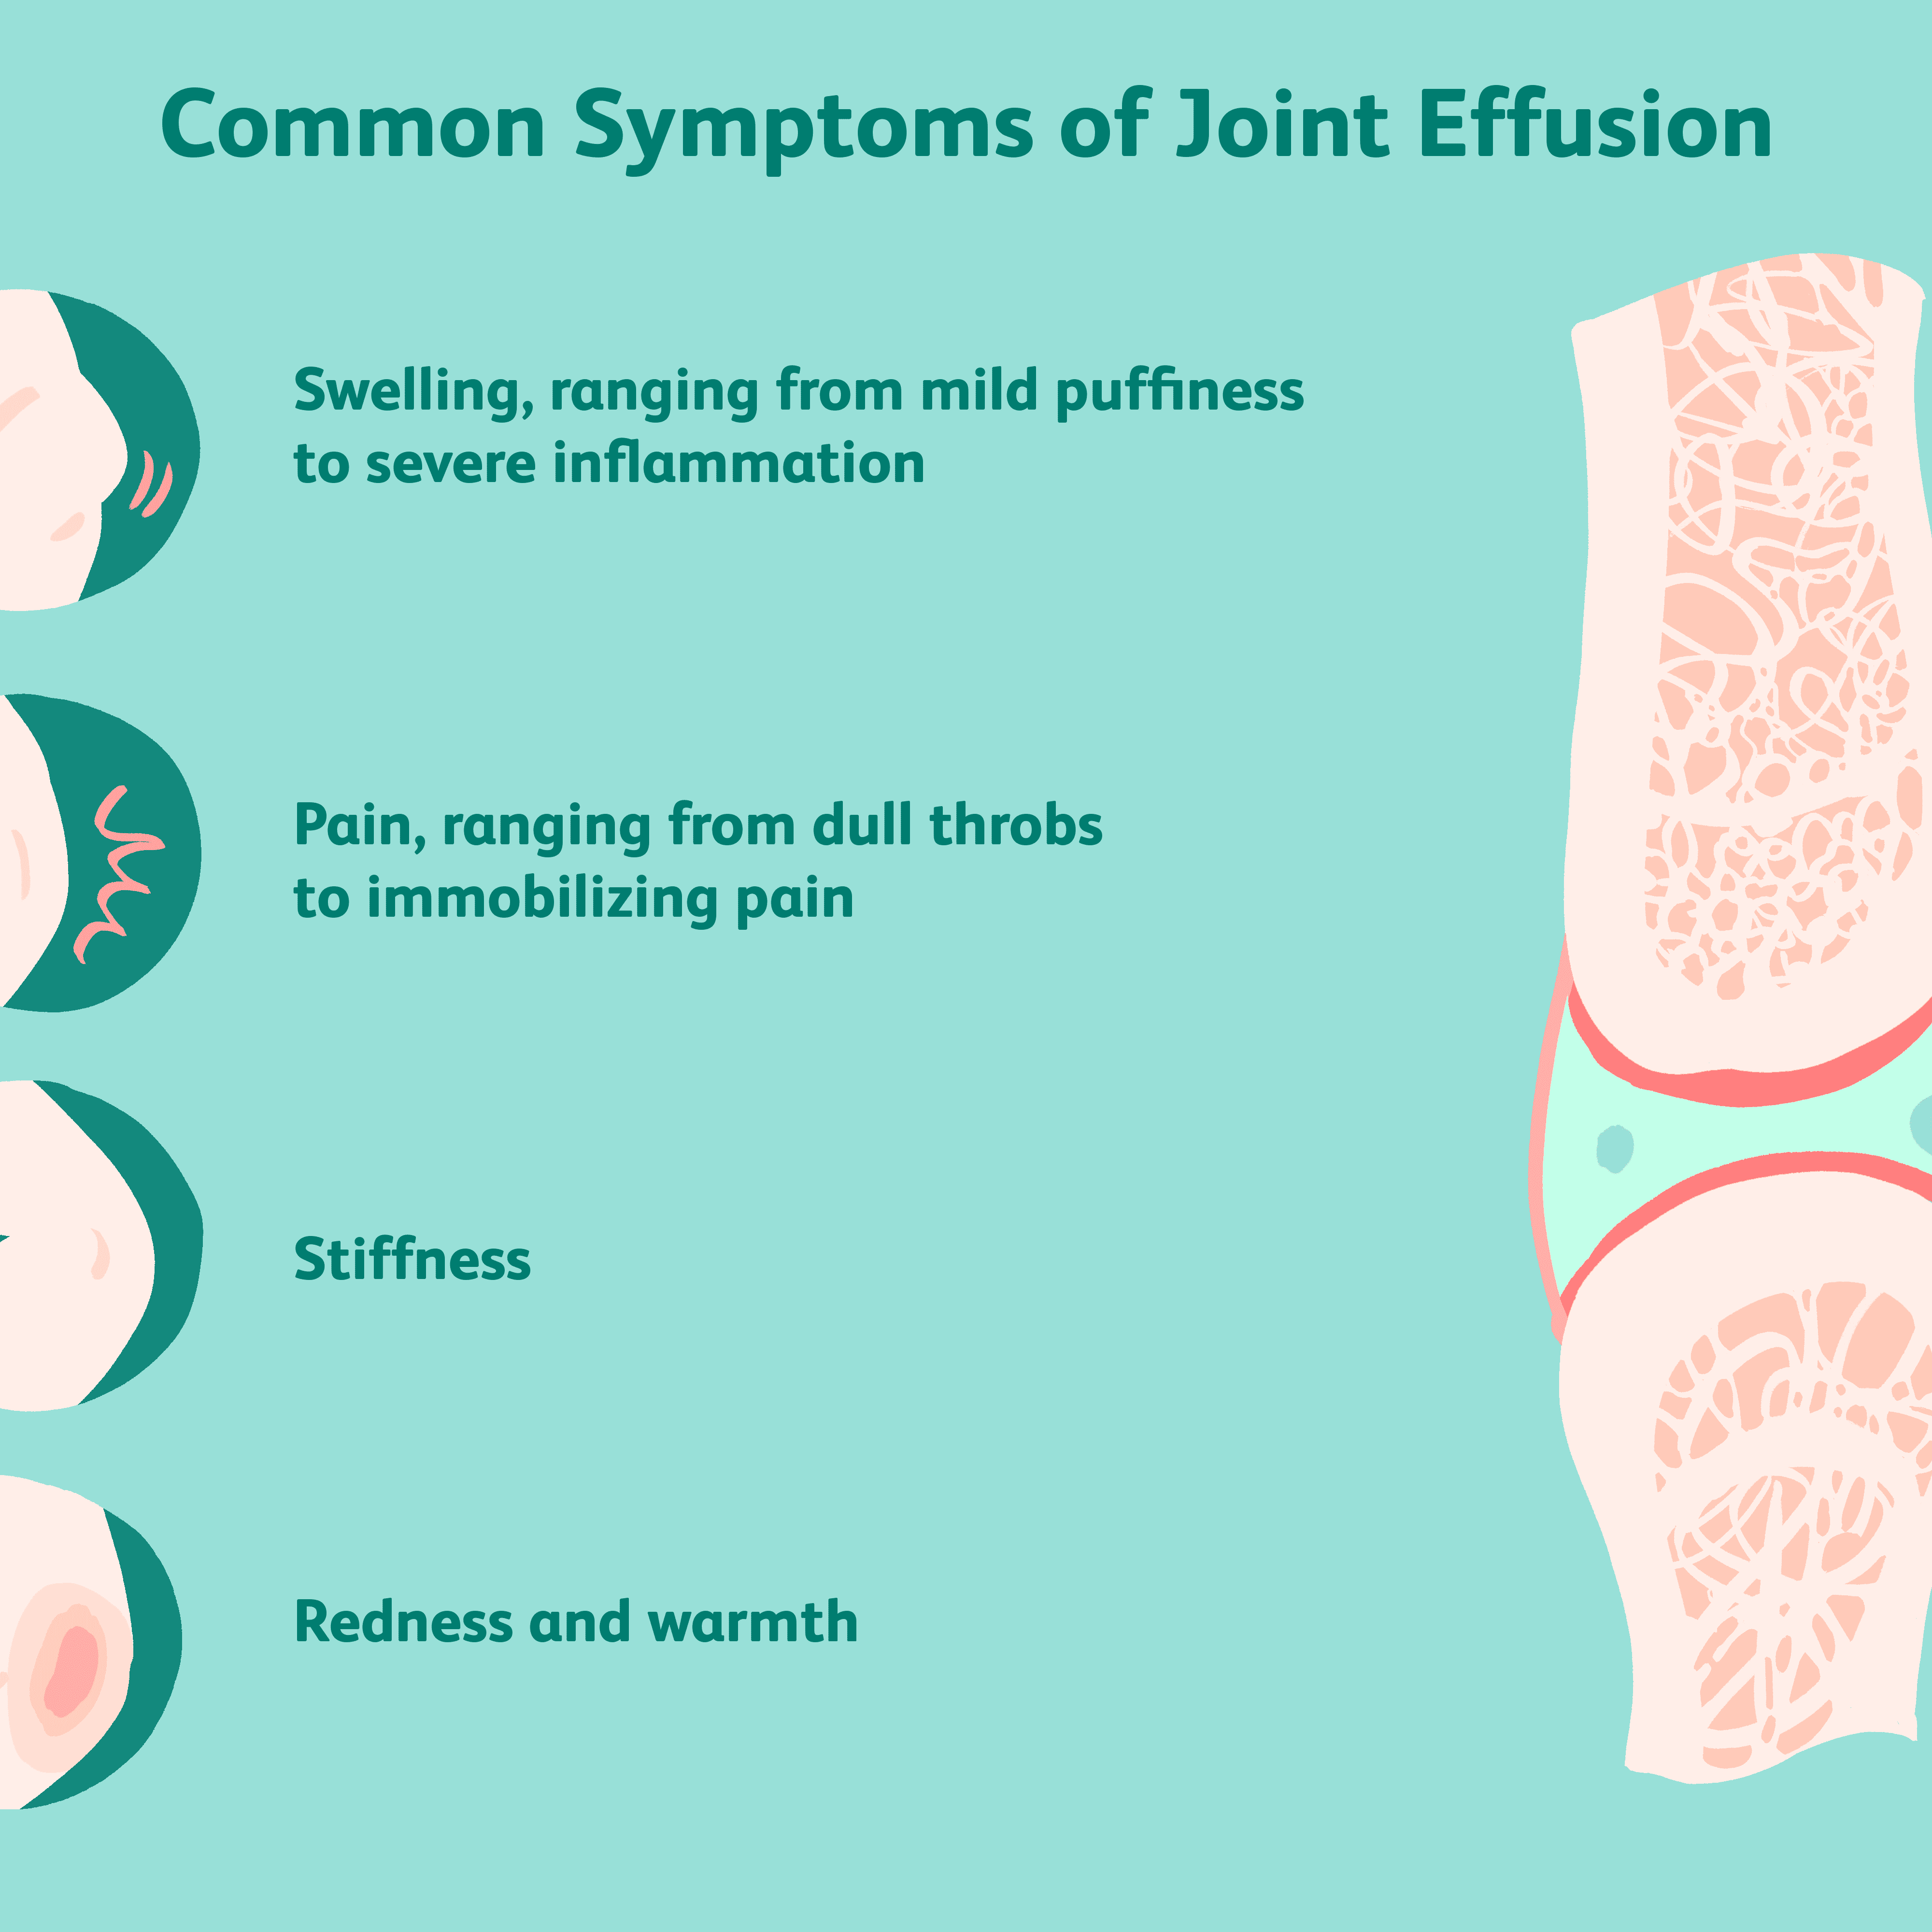 edema with joint effusion uždegimas pėdos gydymo liaudies gynimo sąnarių